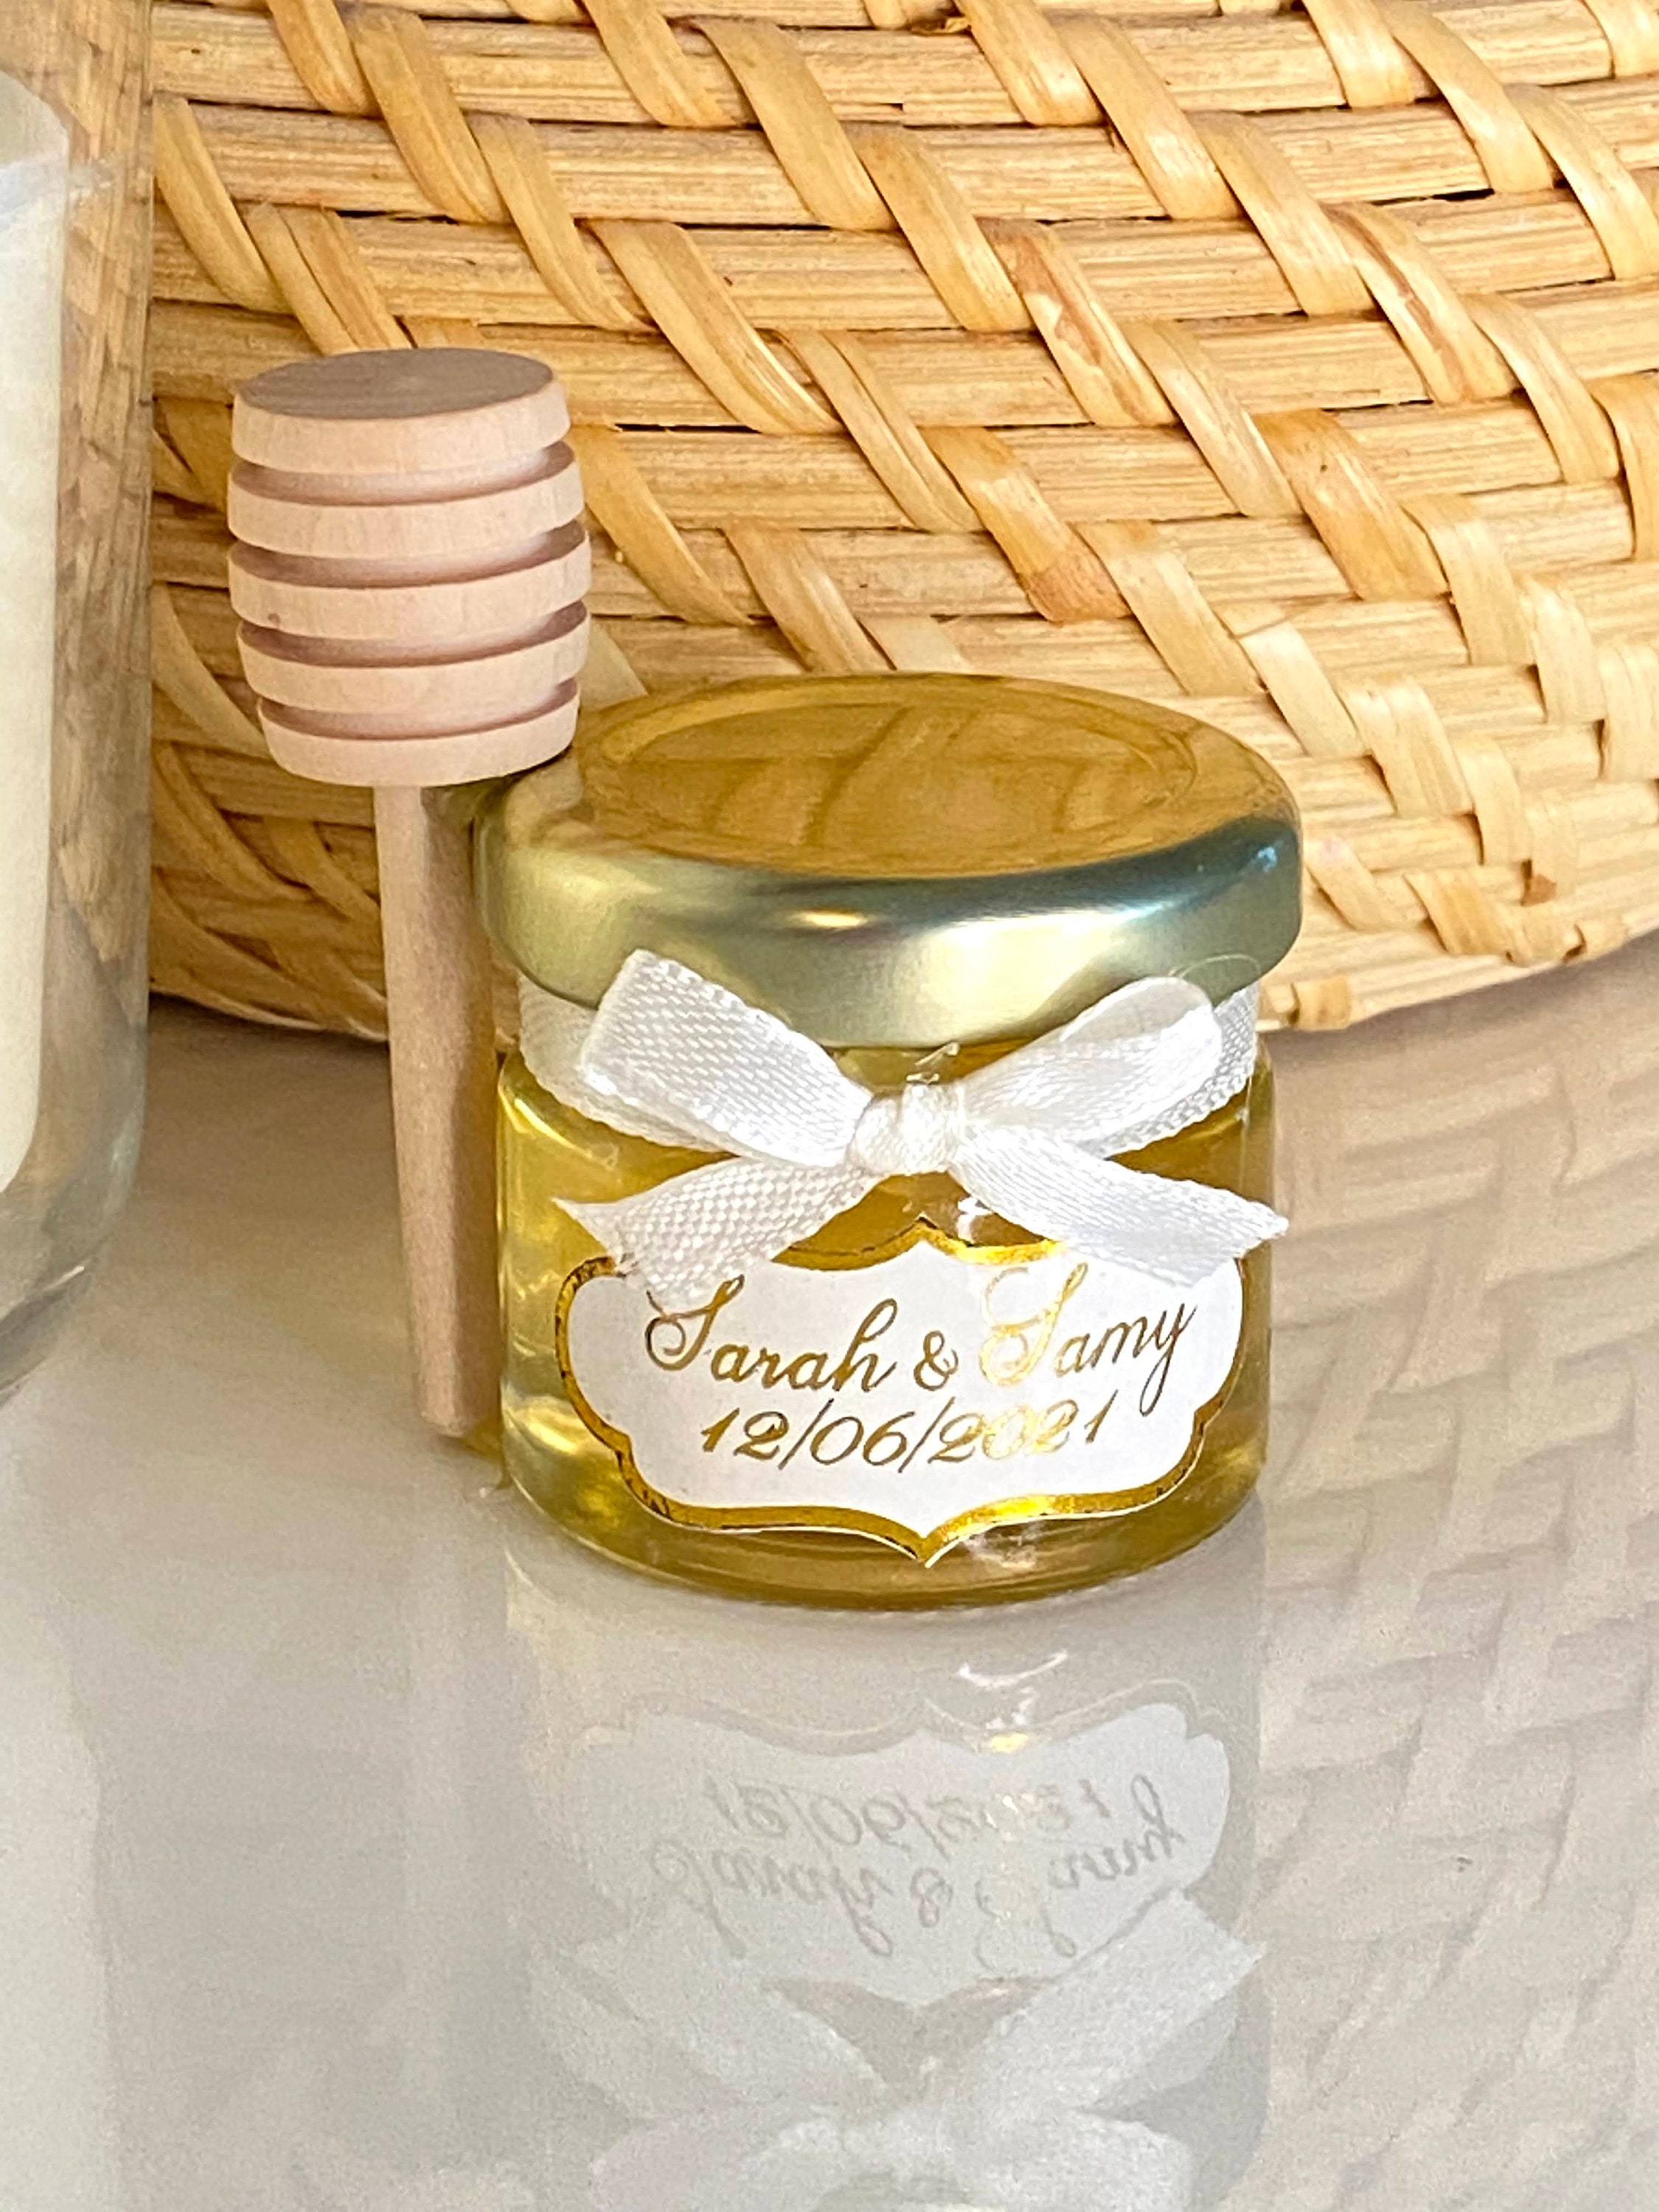 Mini pot de miel de 30g + mini cuillère en bois – Le miel des rois